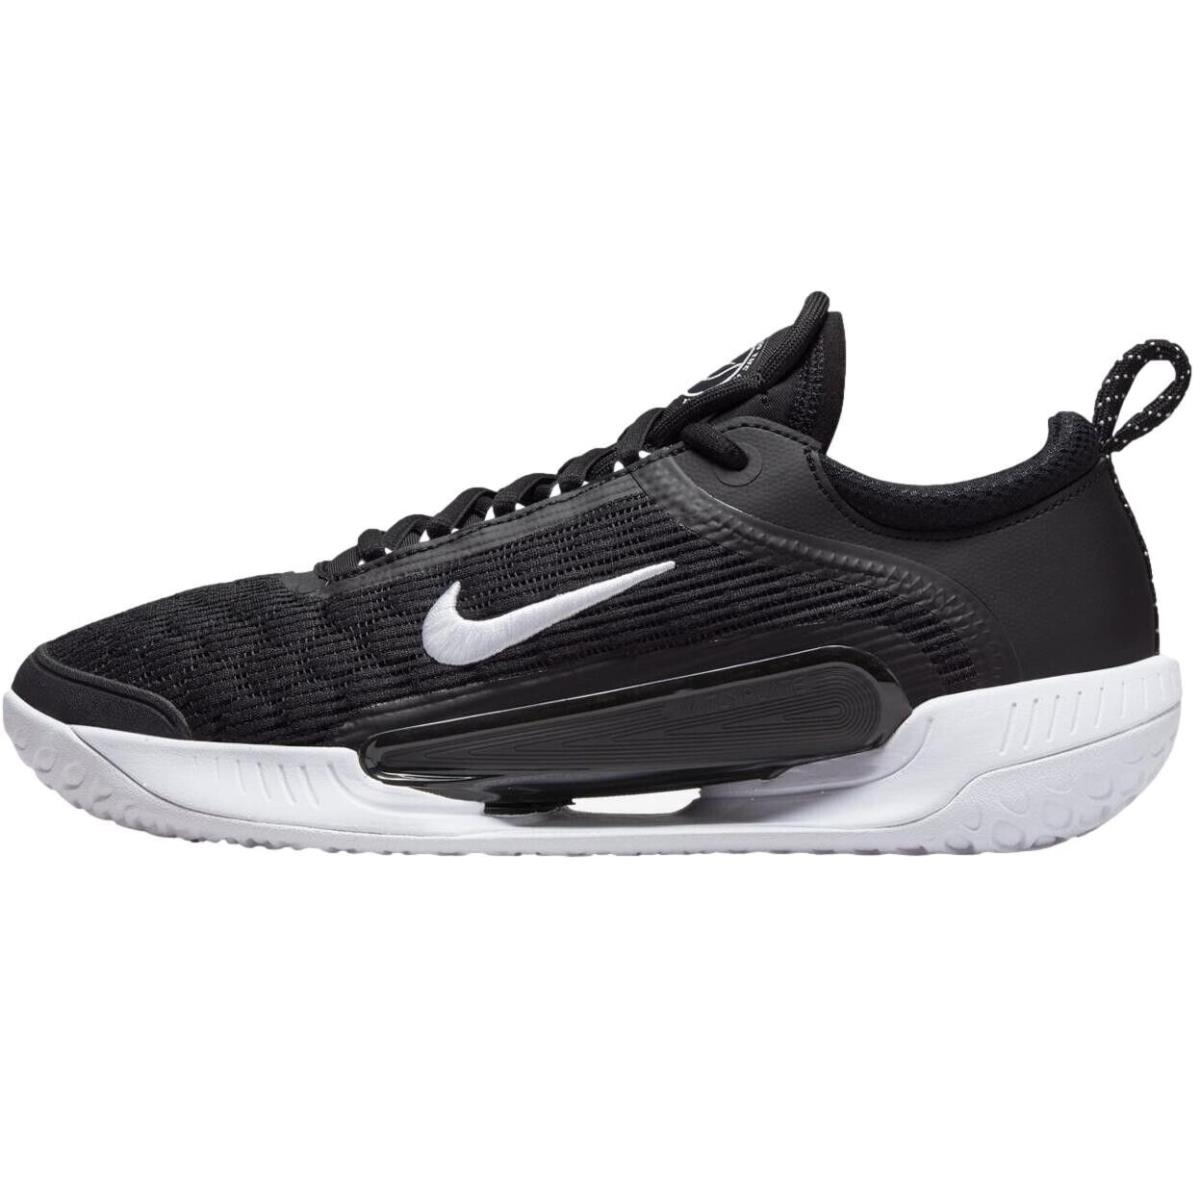 Sz 14 - Nike Men`s Nikecourt Zoom Nxt `black White` HC Tennis Shoes DH0219-010 - Black